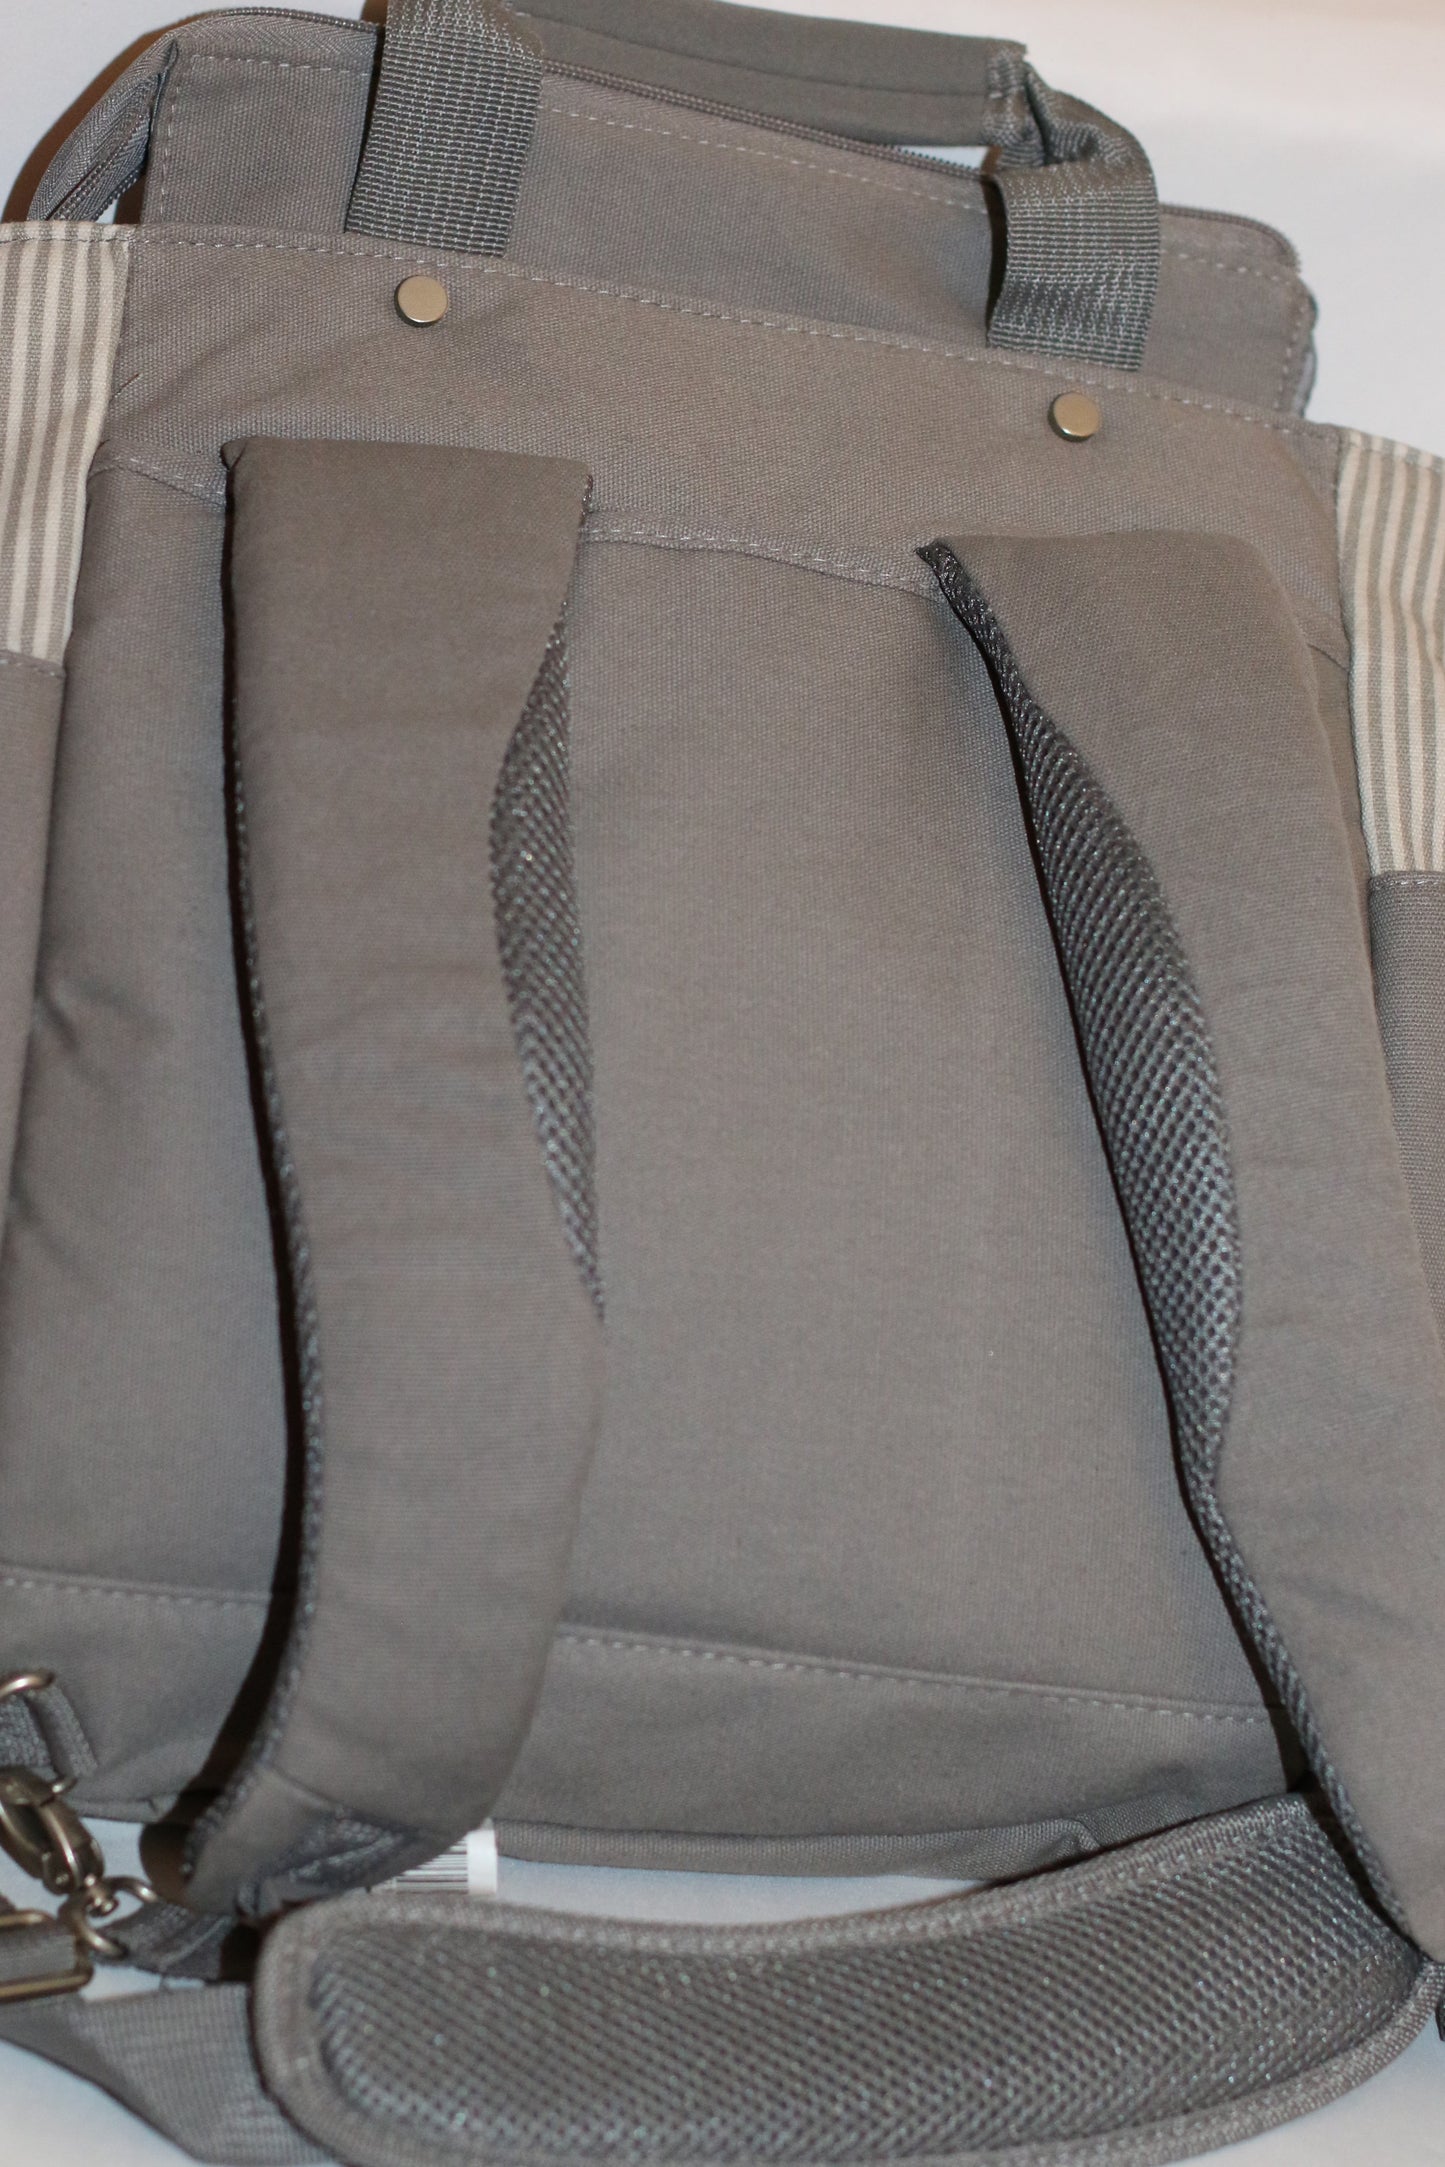 Ergobaby Striped Diaper Bag